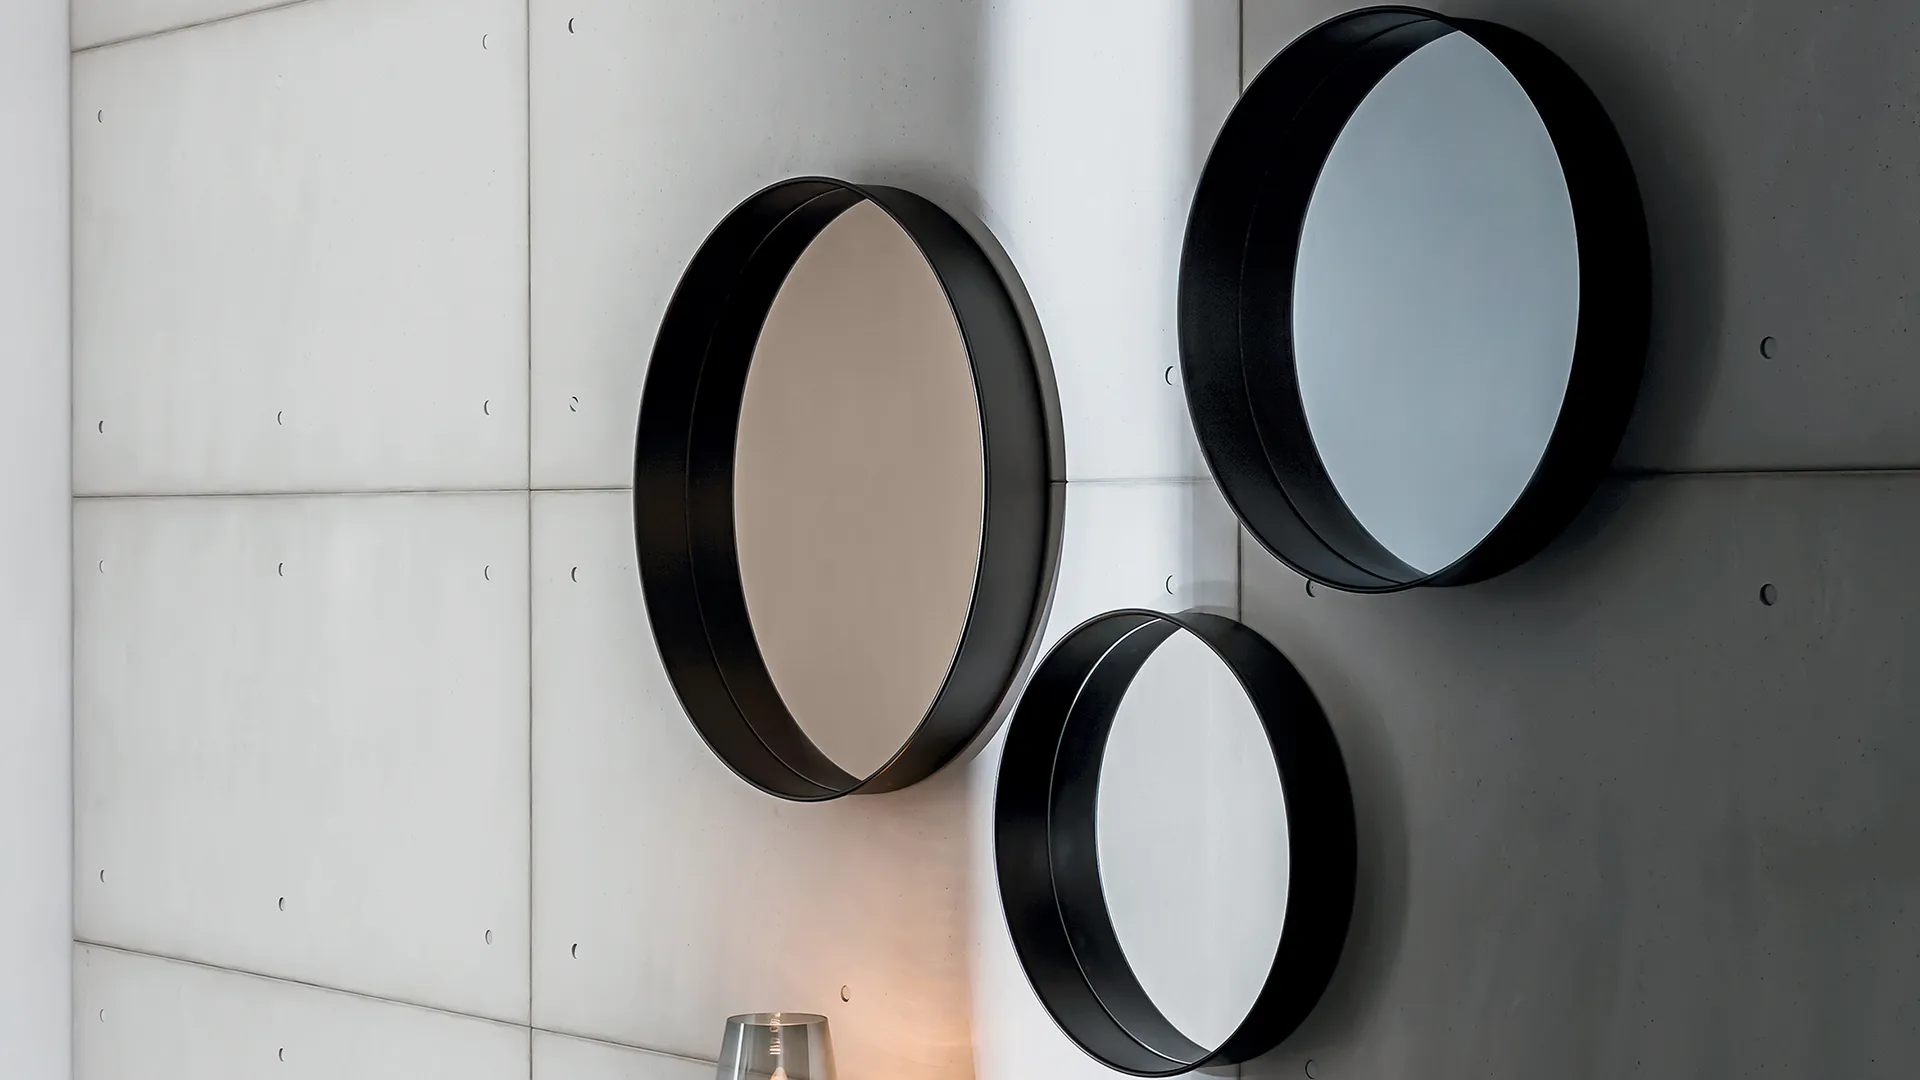 Composizione di specchi rotondi da parete con superfice specchio extrachiaro, fumè, bronzo e cornice in diverse profondità in metallo bianco, nero, ca